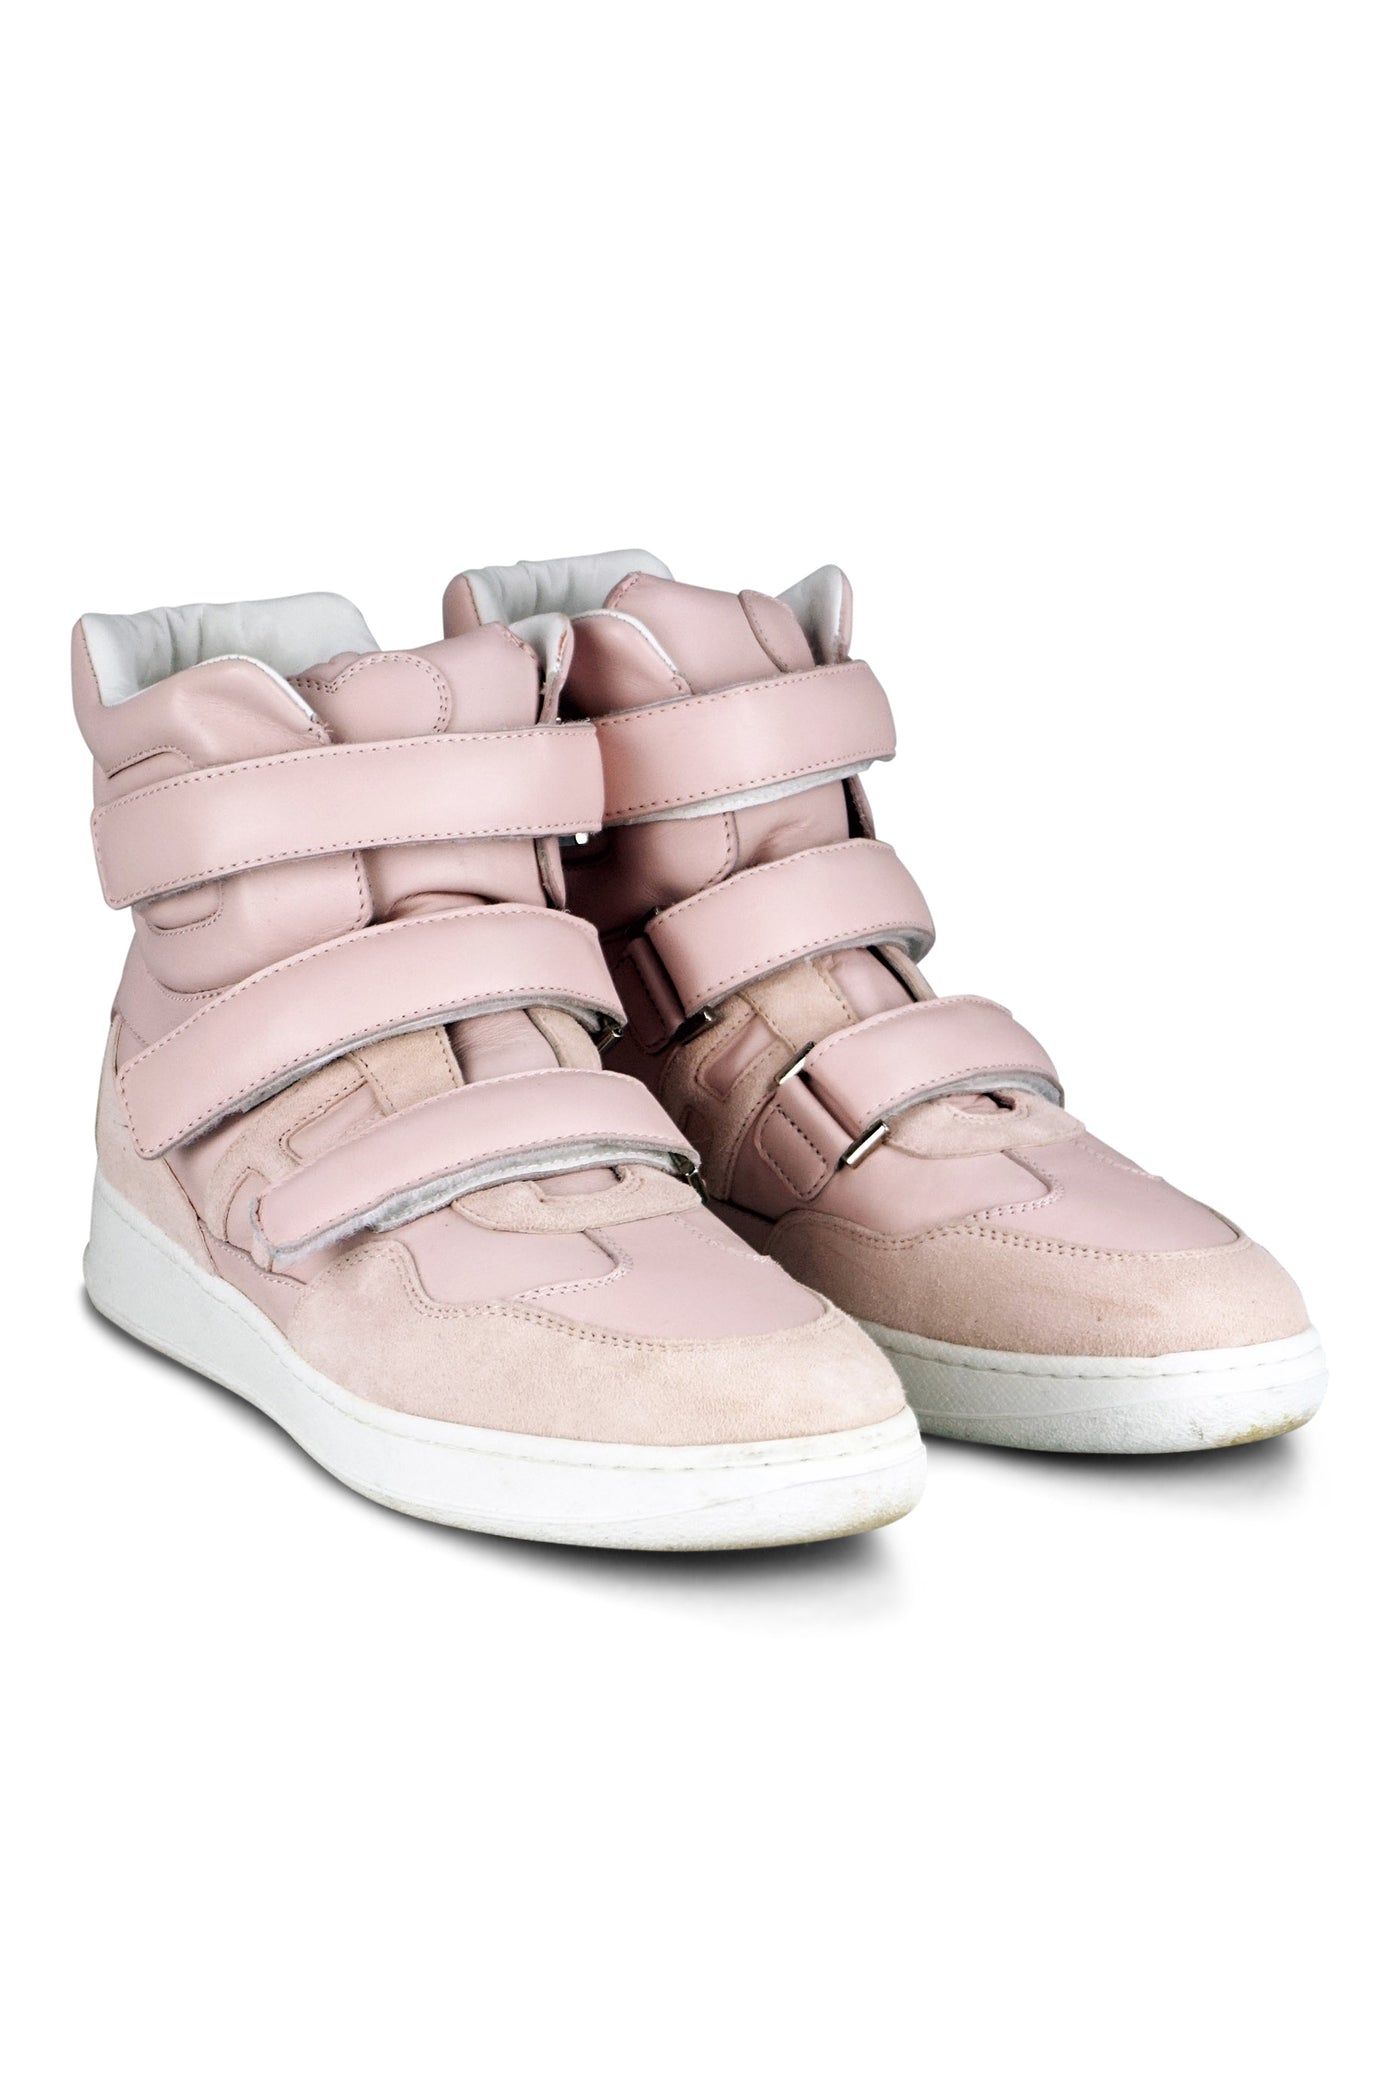 Katie Grand Loves Hogan baby pink sneakers